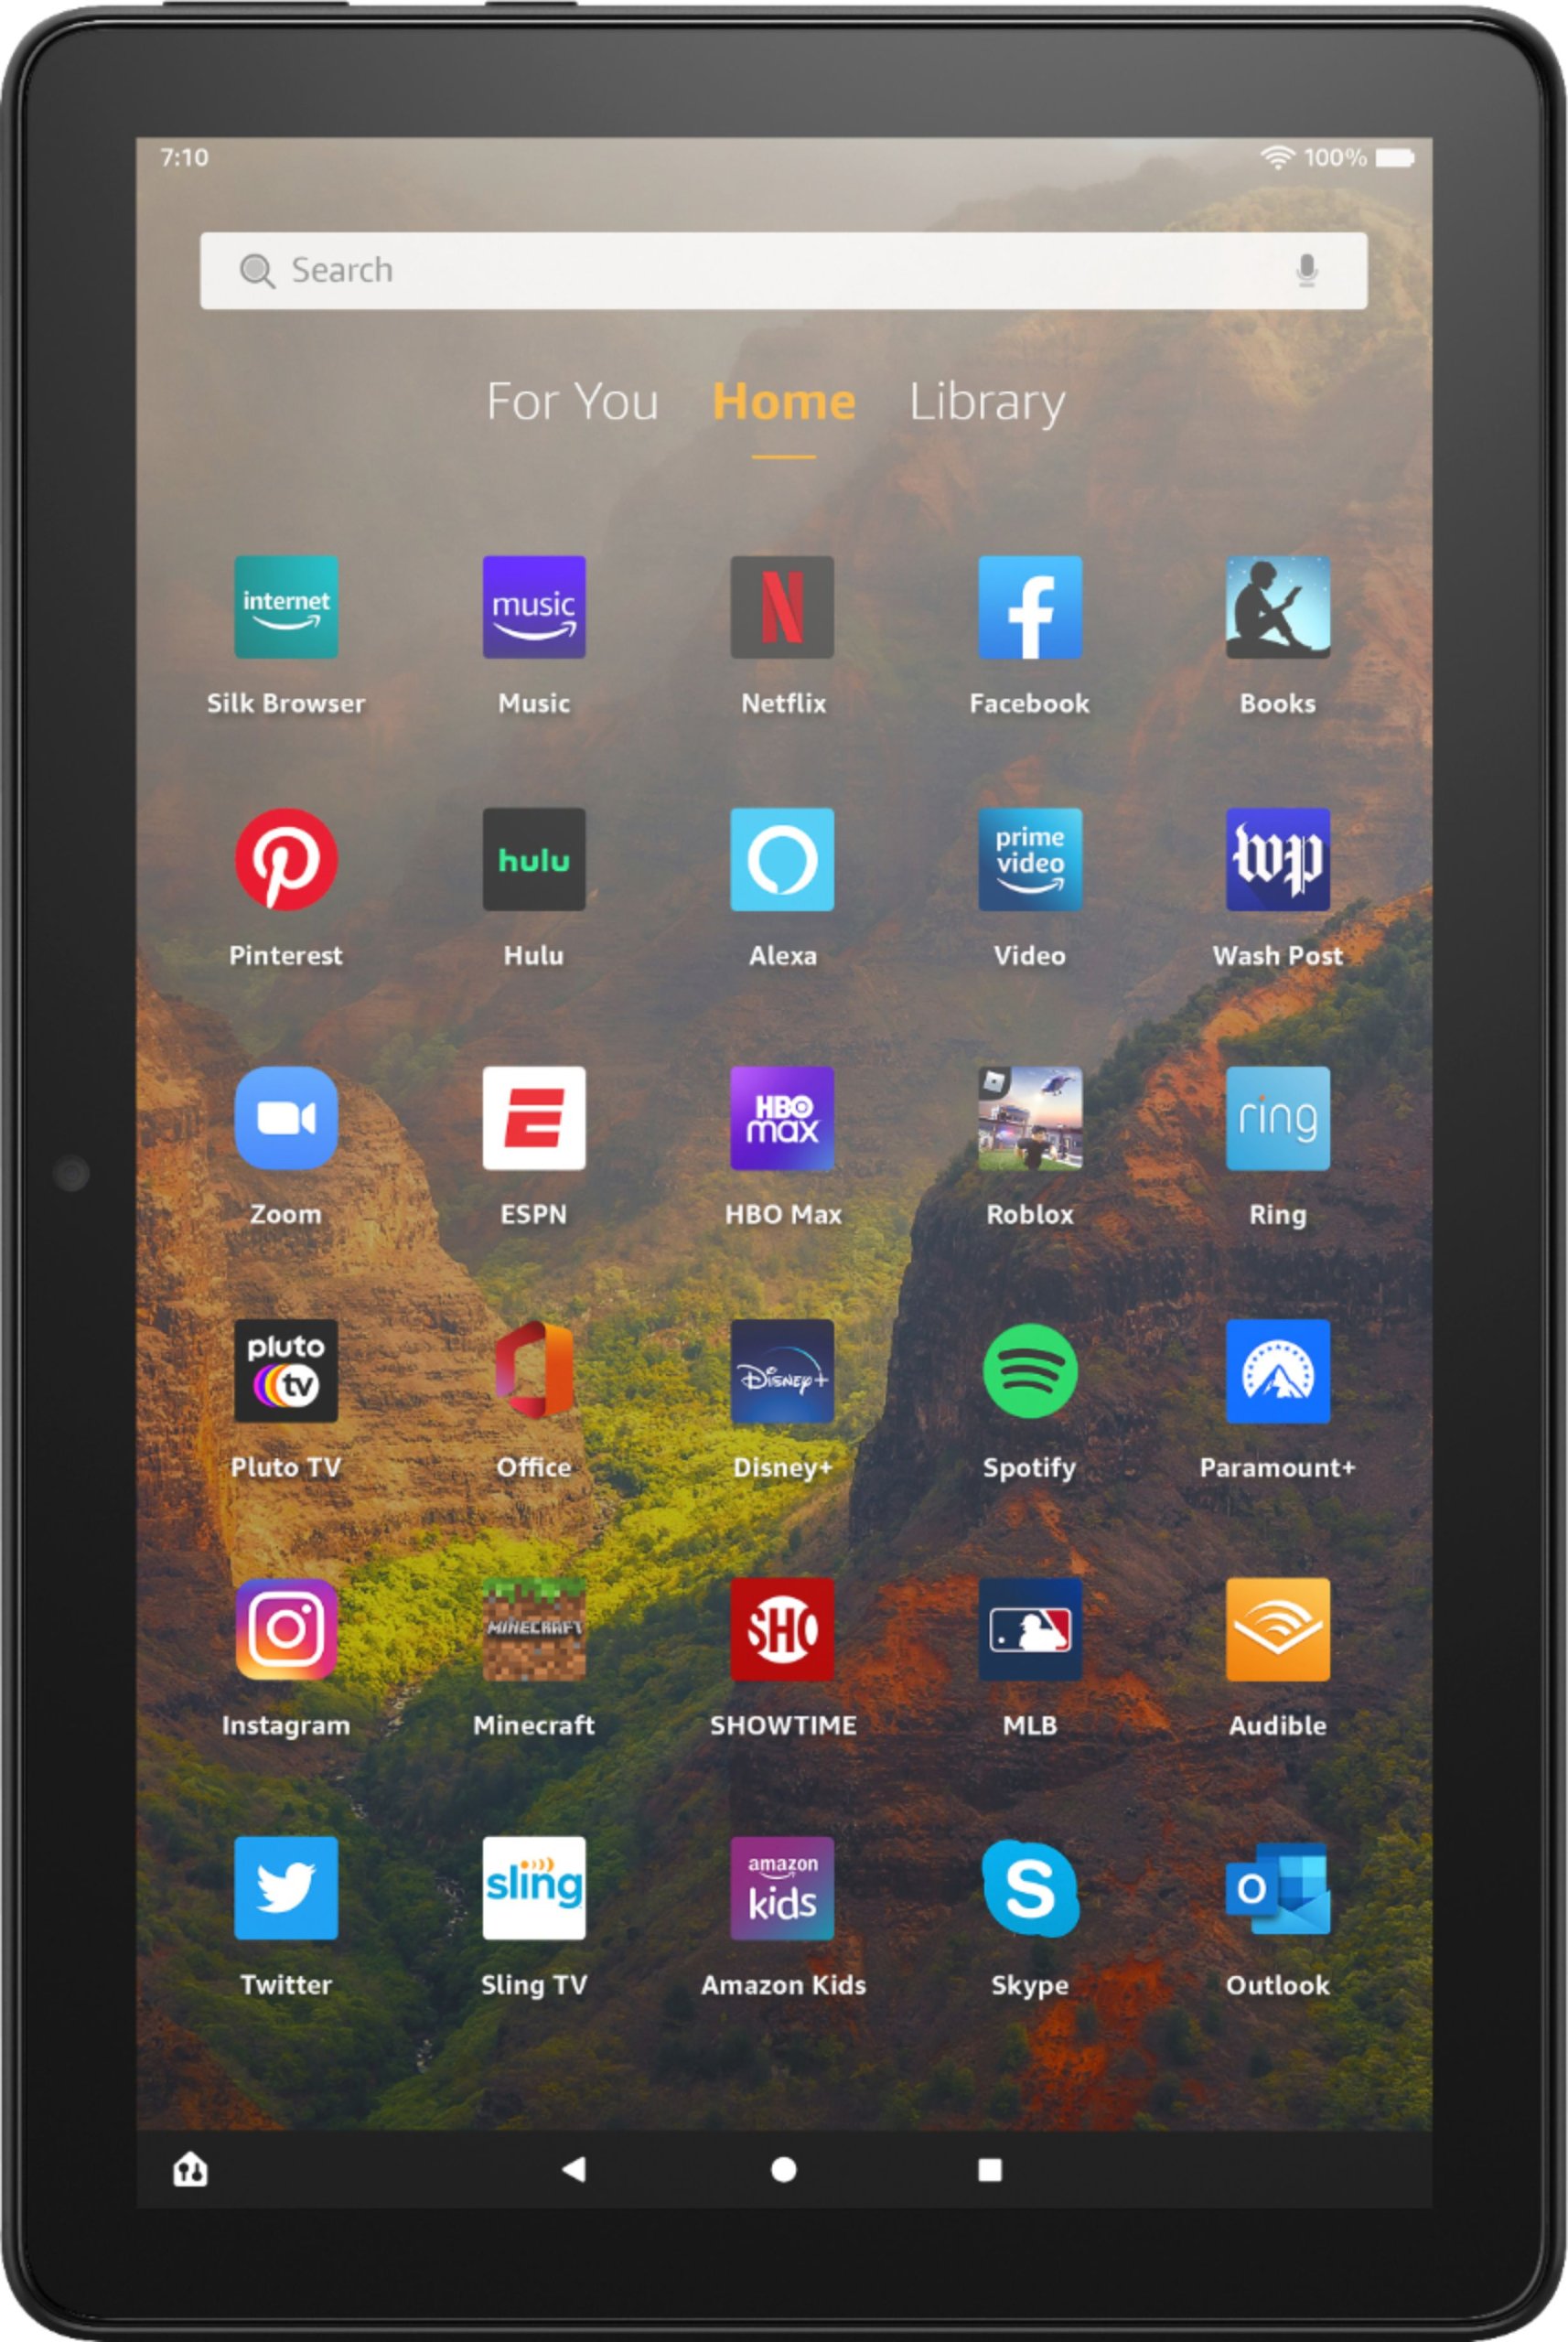 Tablet  Fire HD 8 32GB Ultima Generación Negro